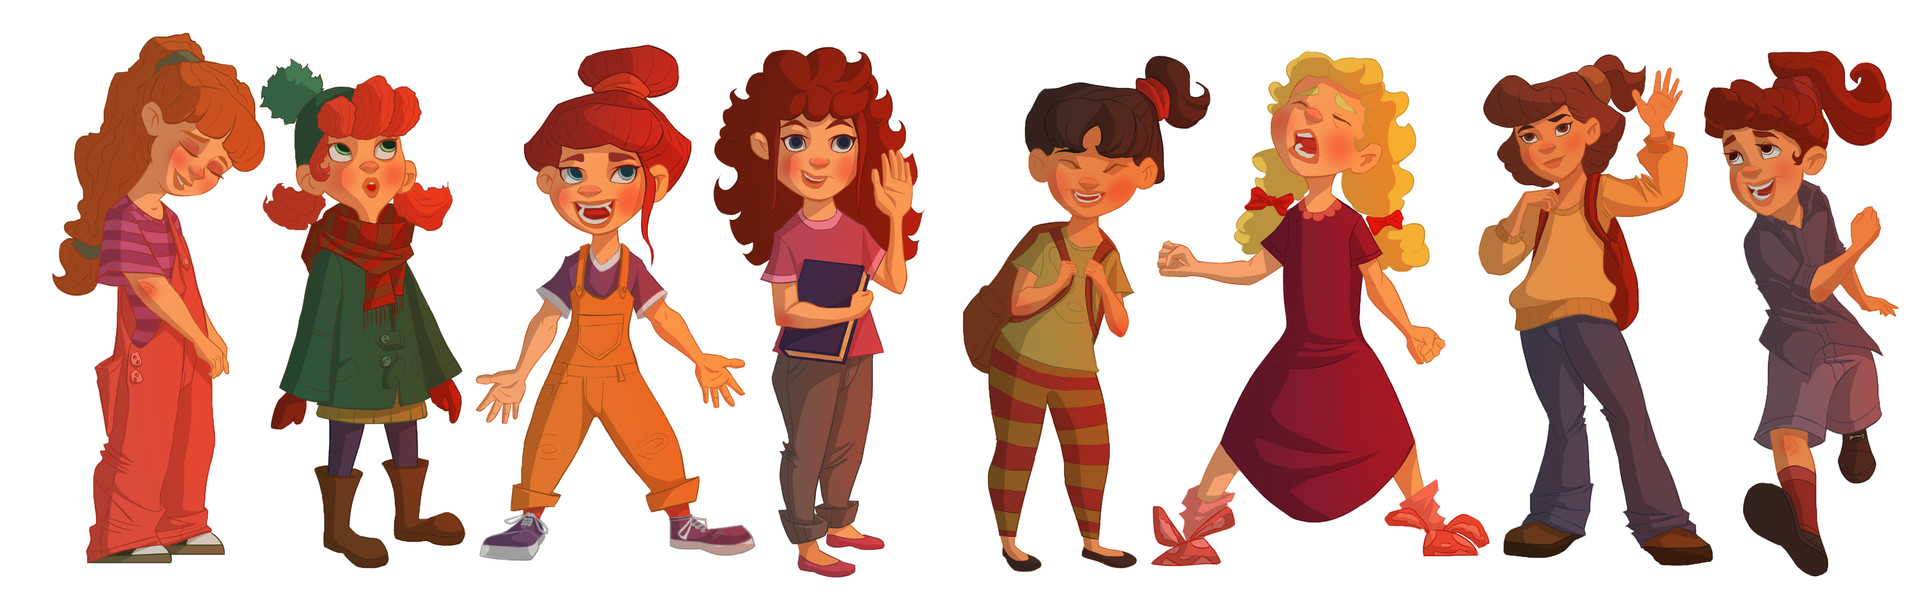 ArtStation - Character design for children's book